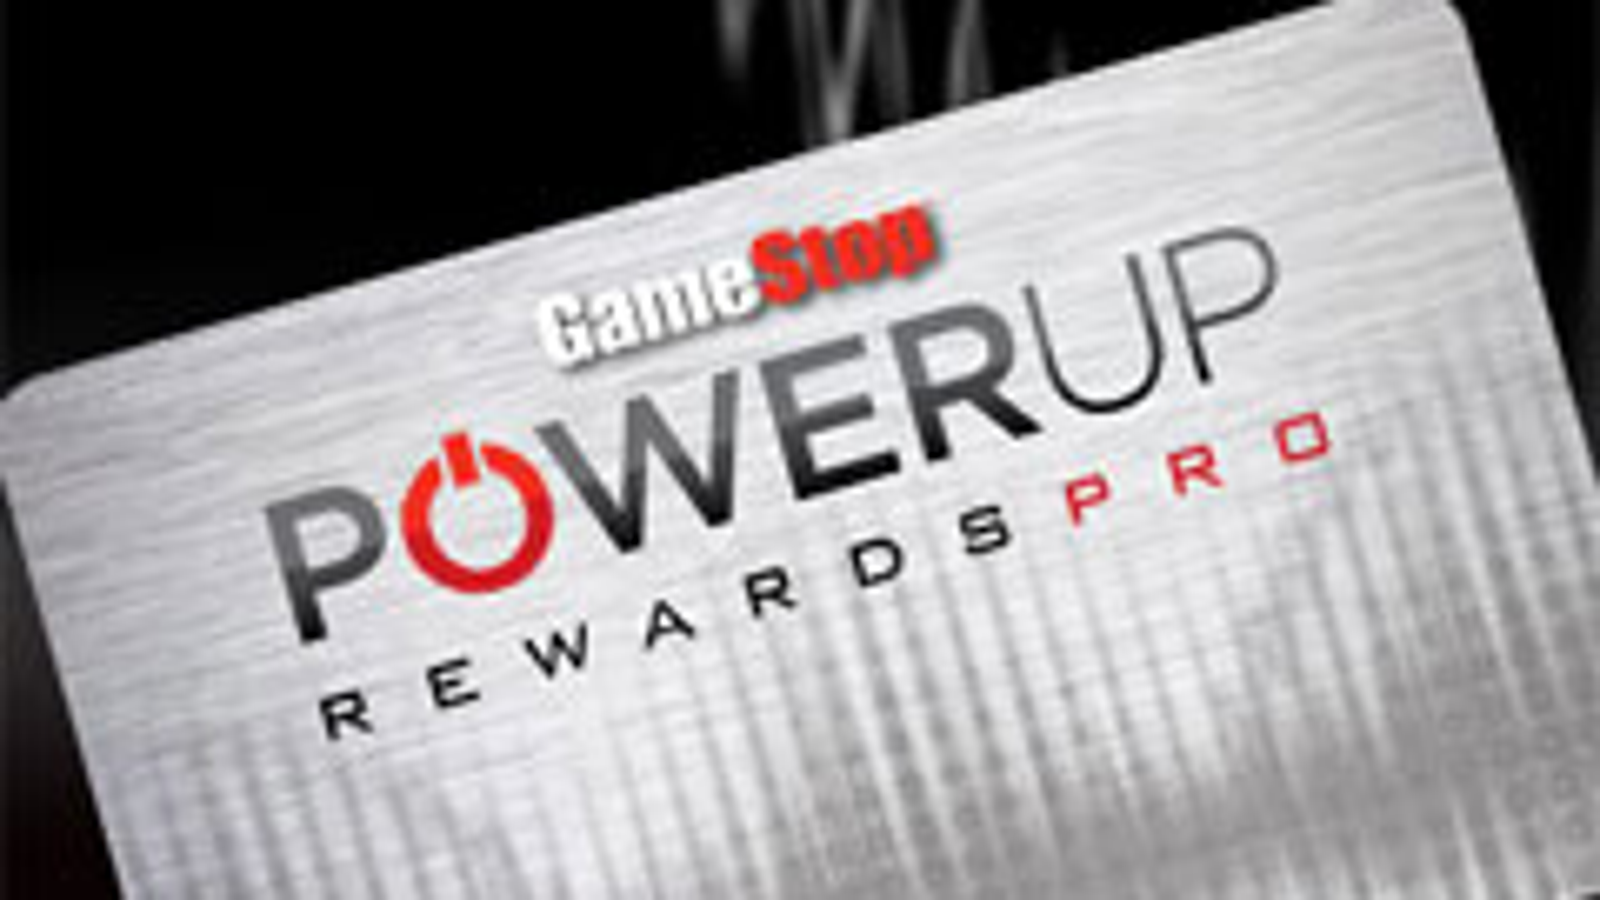 gamestop powerup rewards membership number on card